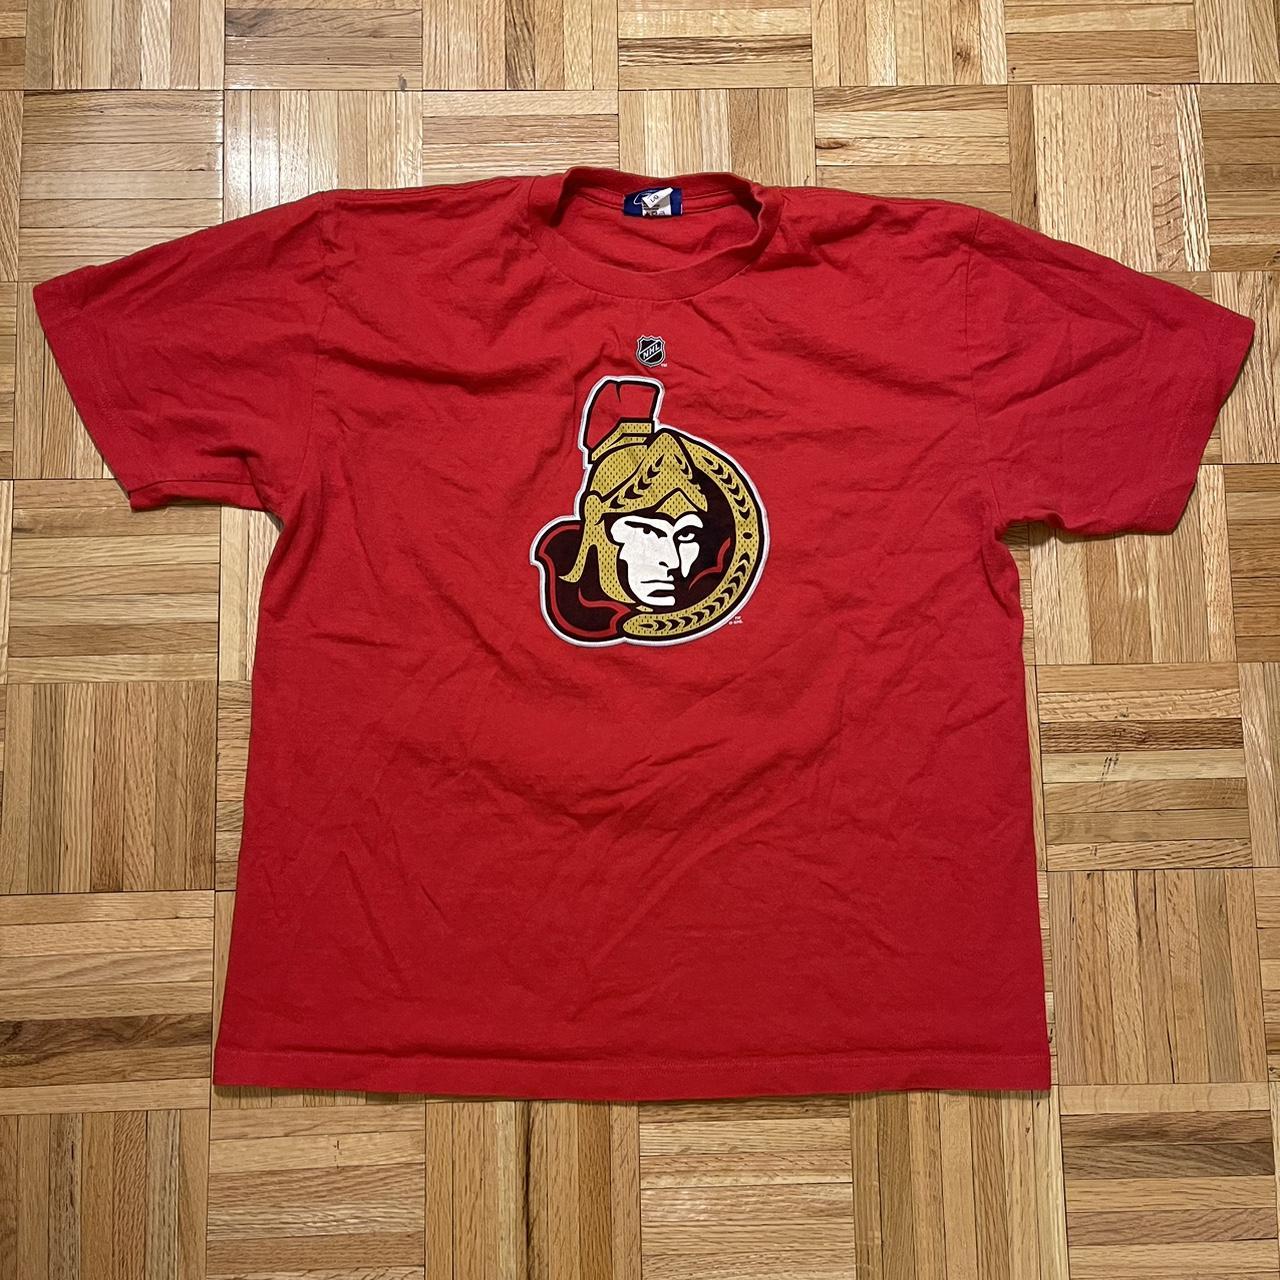 Reebok, Shirts, Vintage Ottawa Senators Hockey Jersey